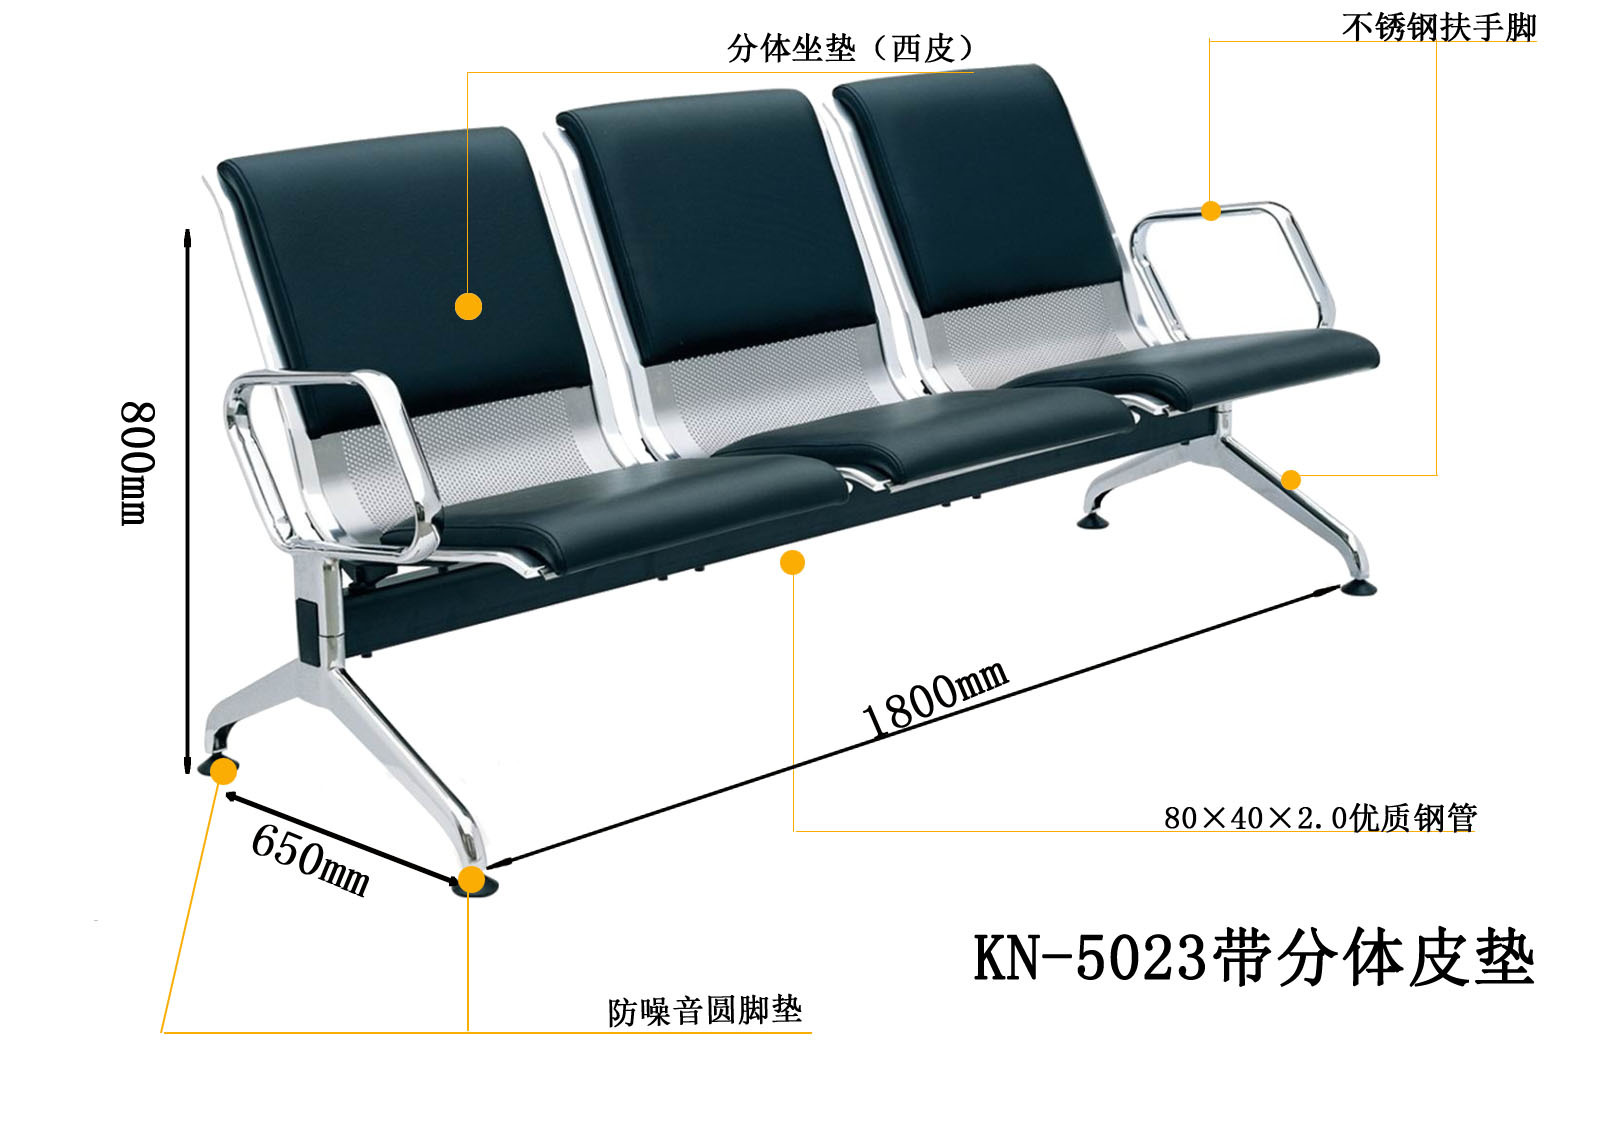 产品名称:不锈钢公共座椅 产品尺寸